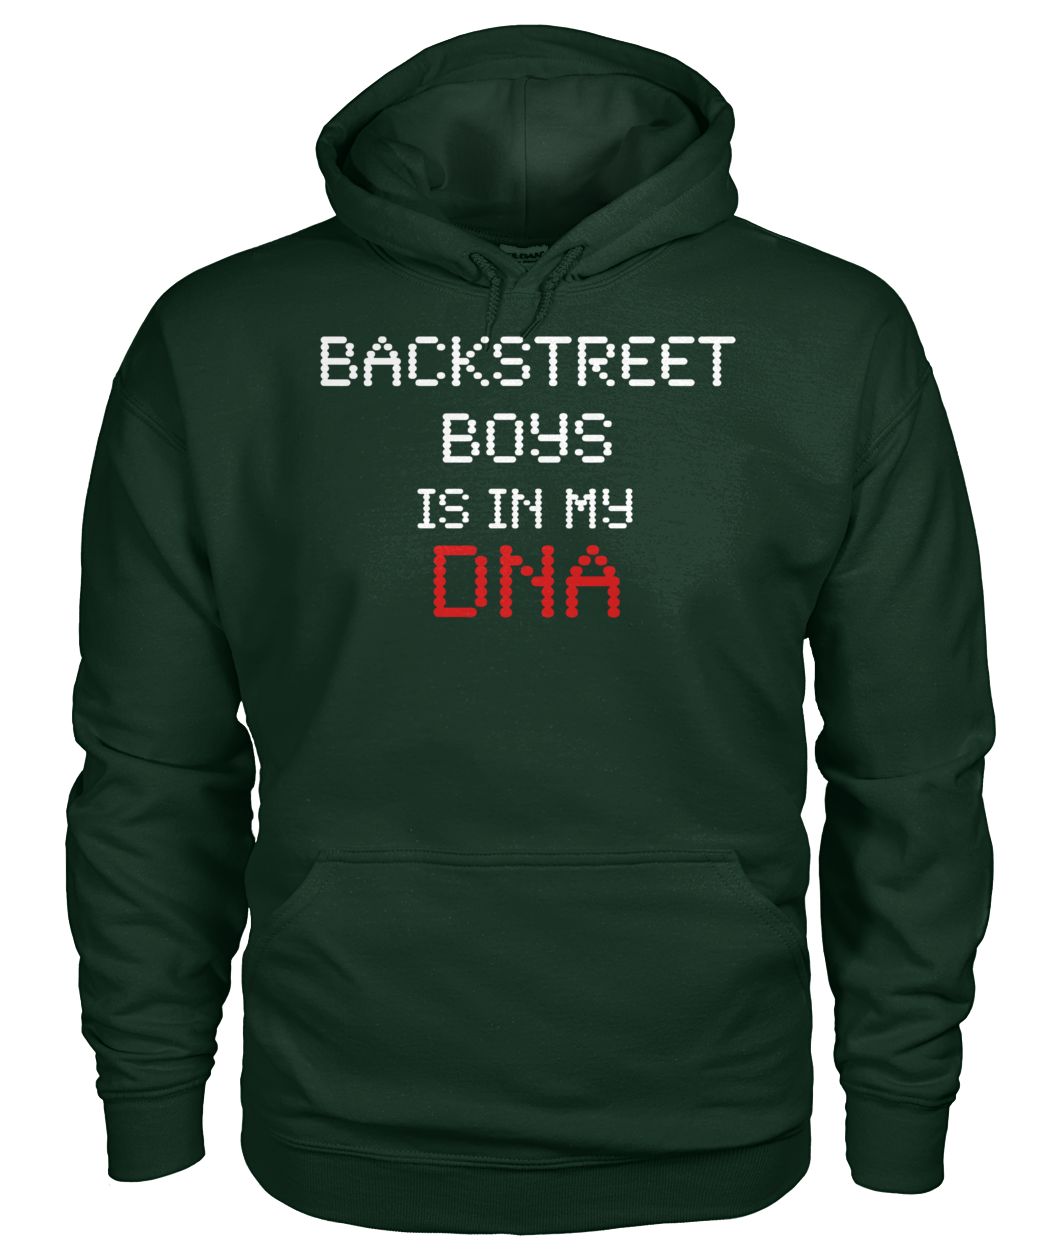 Backstreet boys is in my DNA gildan hoodie